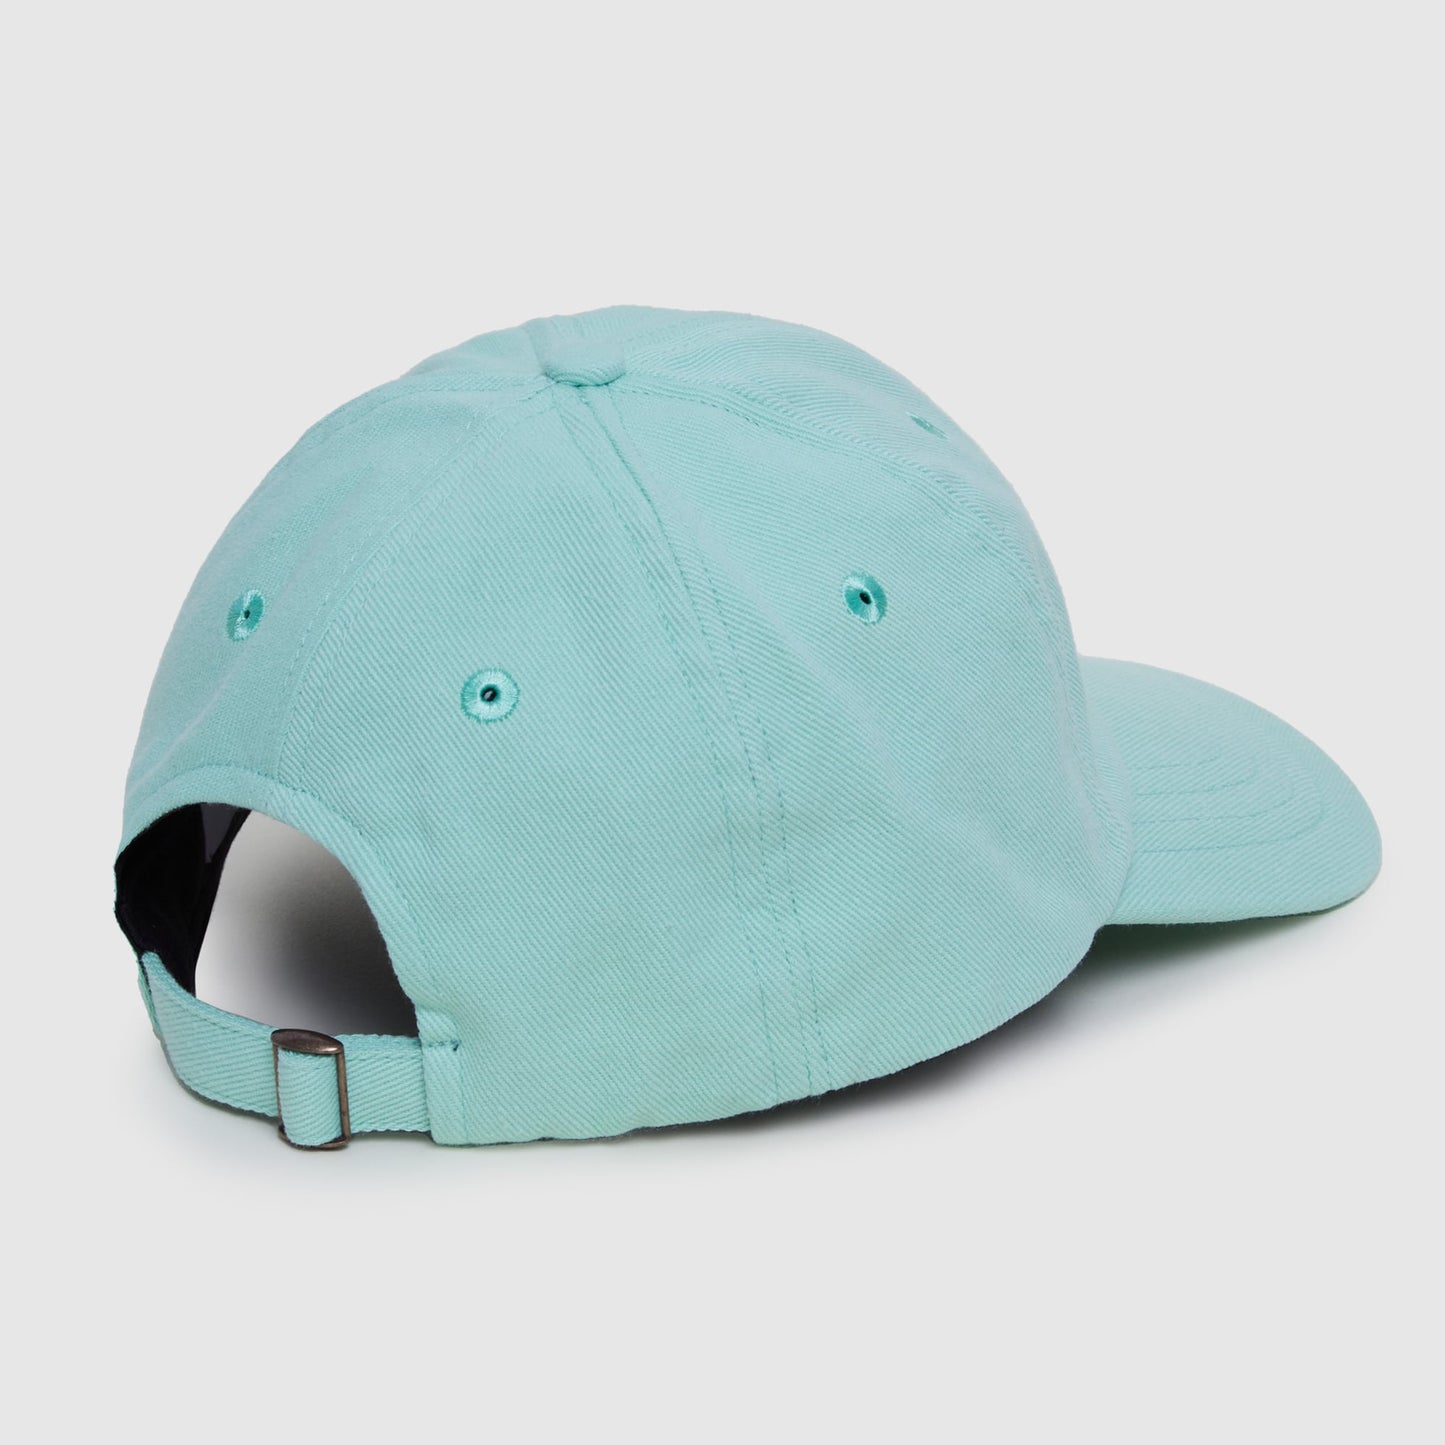 The green cap